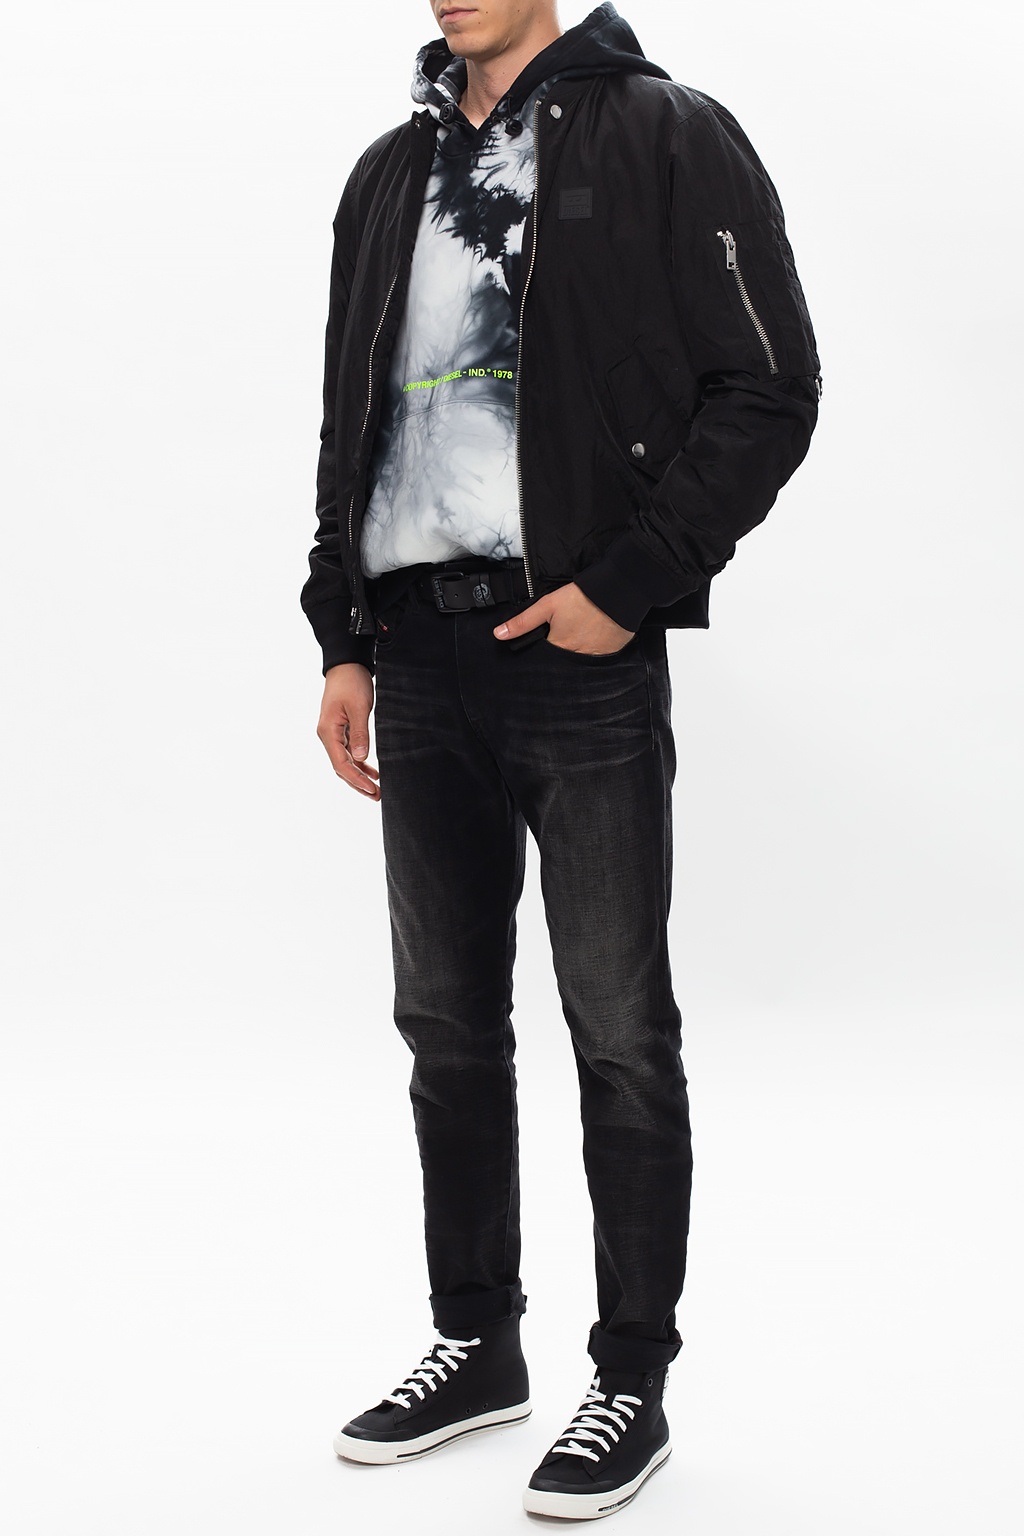 Louis Vuitton - DNA Denim Jacket - Black - Men - Size: 54 - Luxury